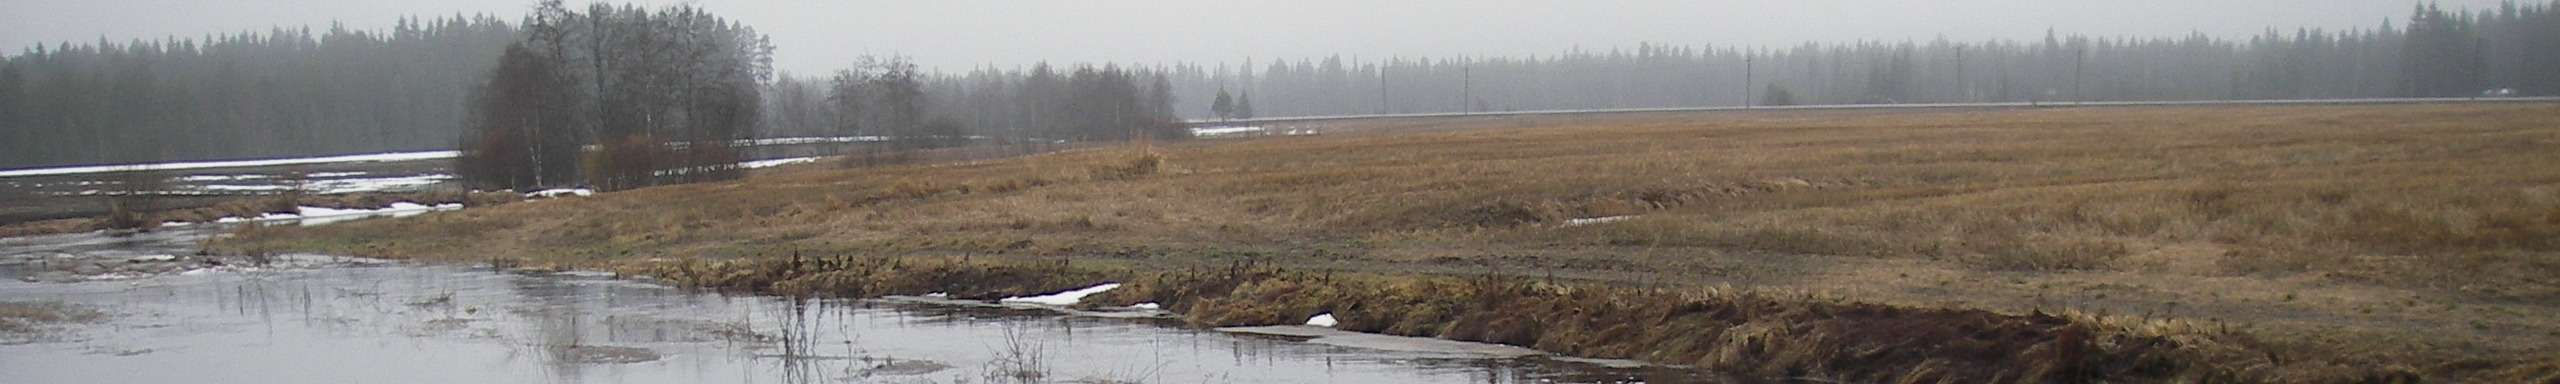 Jääpatojen kannalta ongelmana on joen alaosalla oleva Lervikenin silta, jota vasten jäät saattavat ruuhkautua.